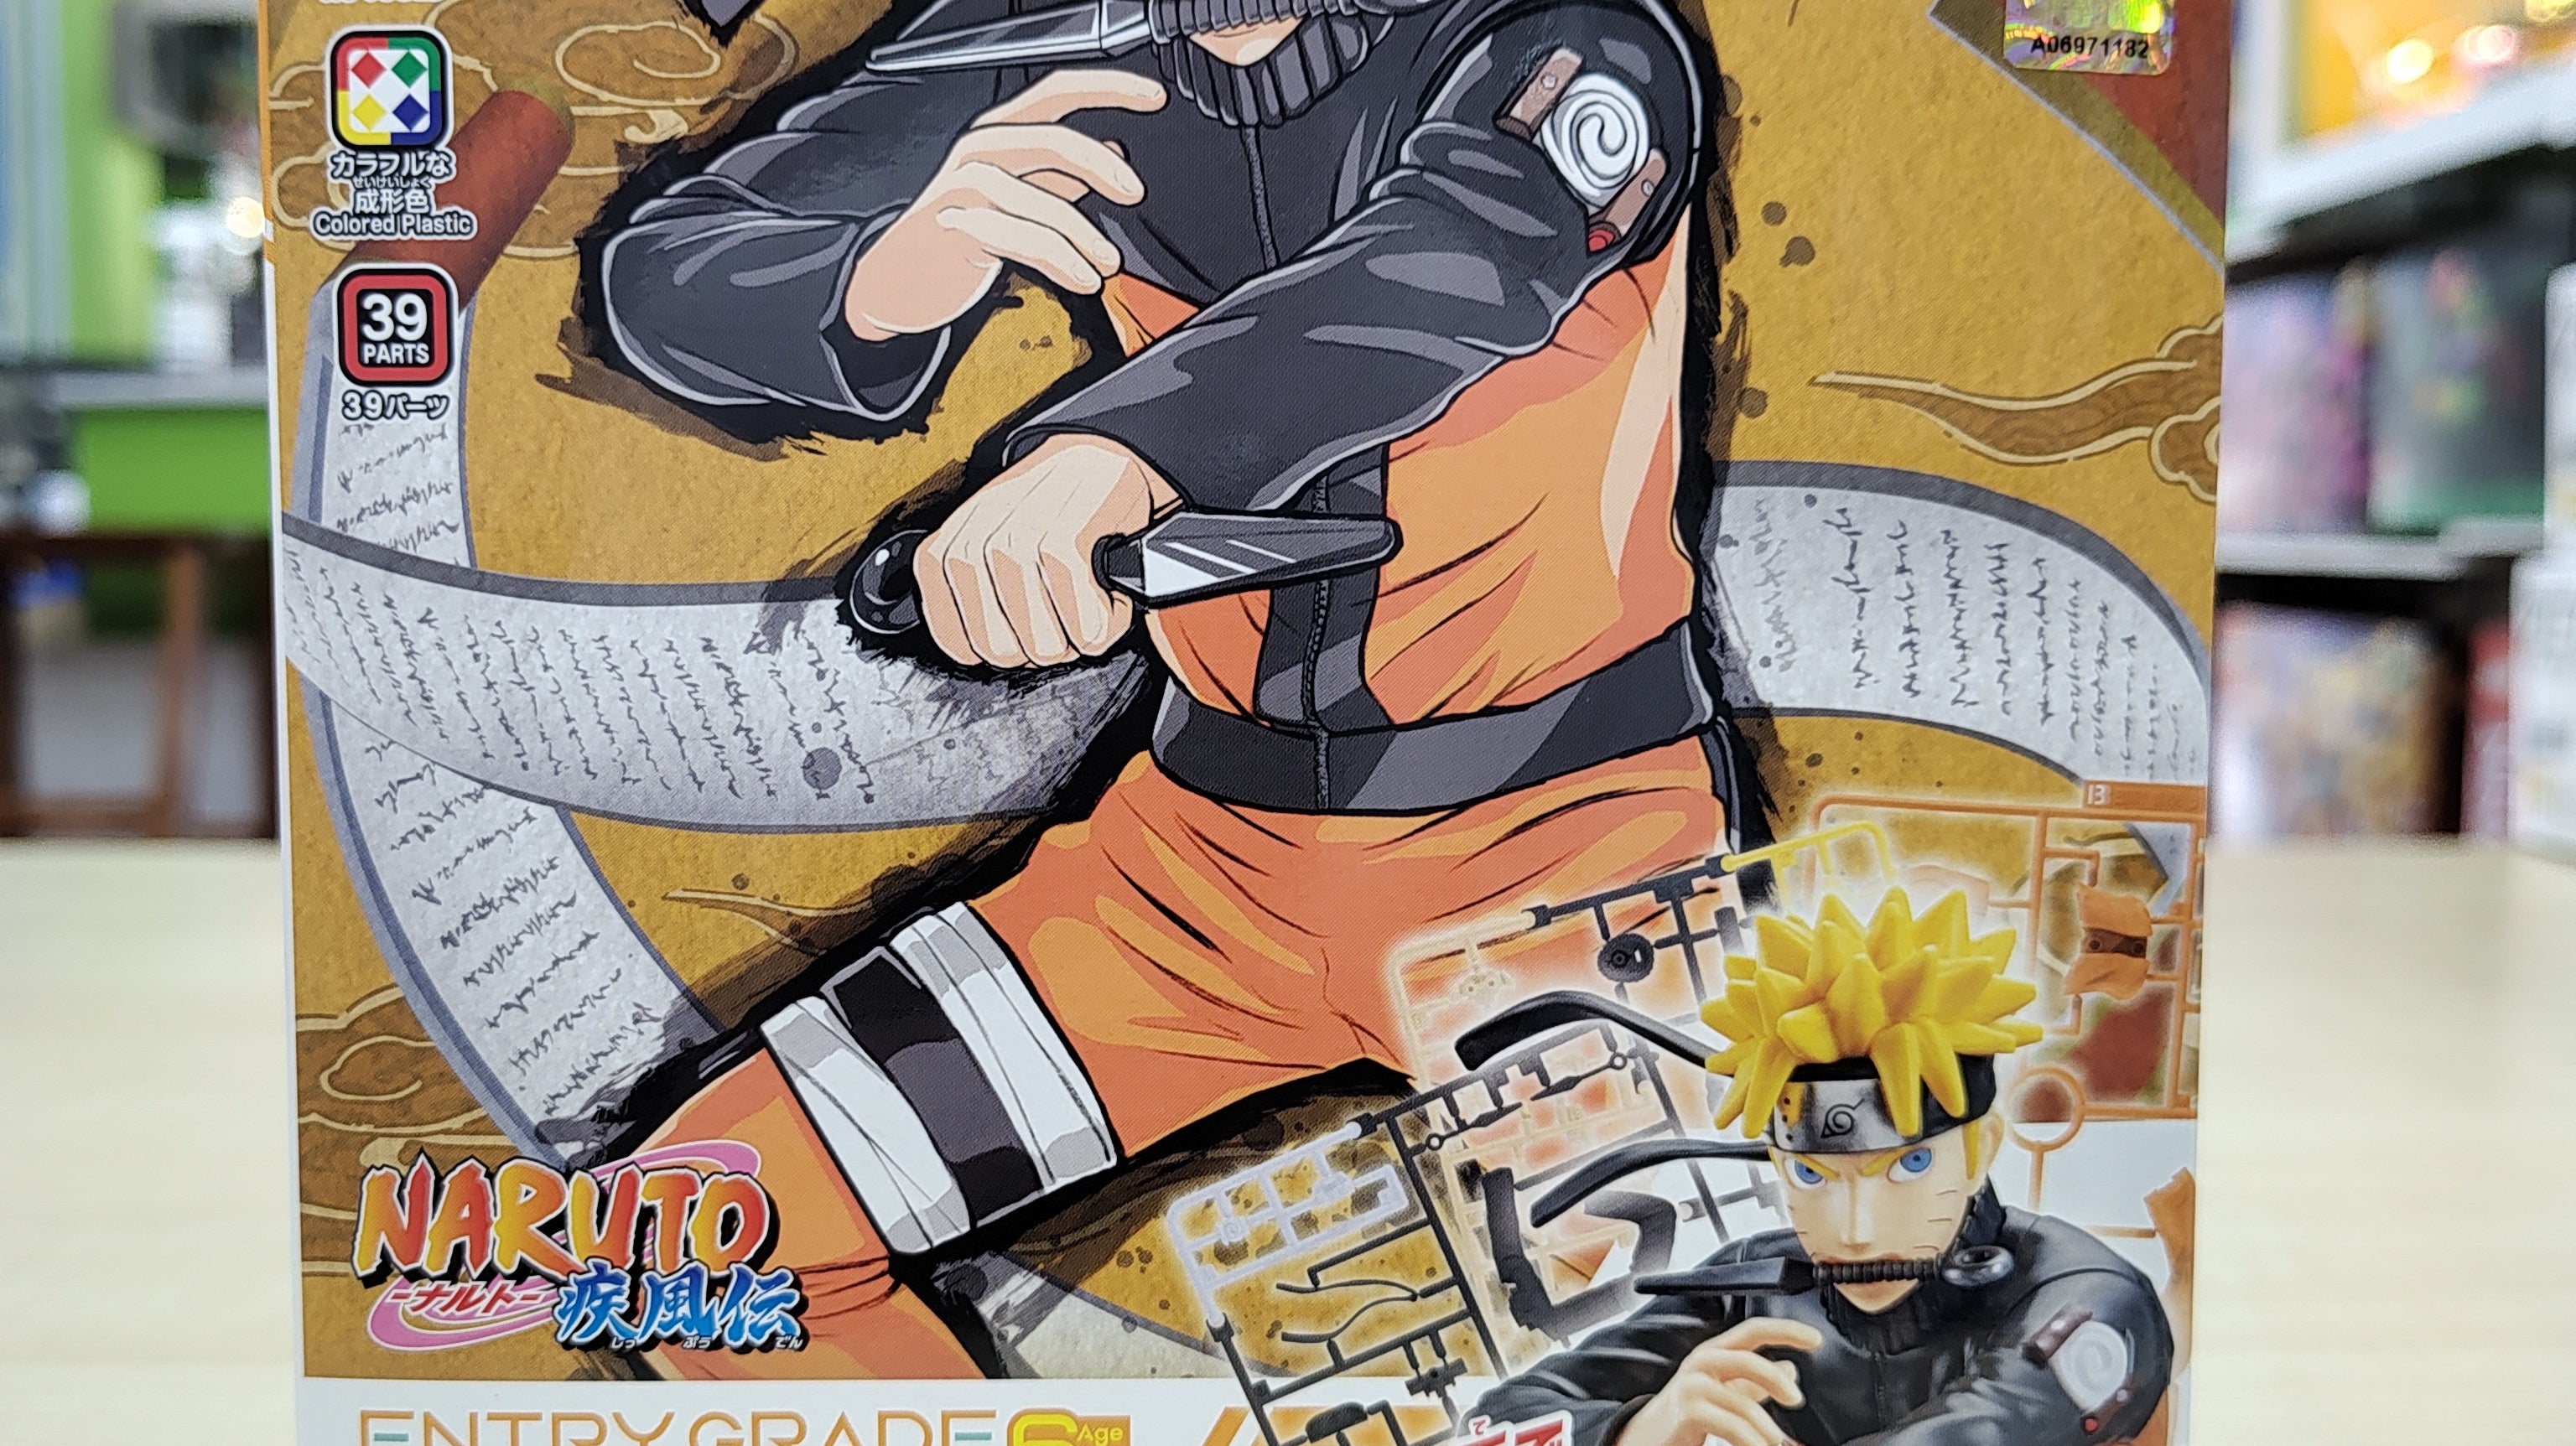 Entry Grade Uzumaki Naruto